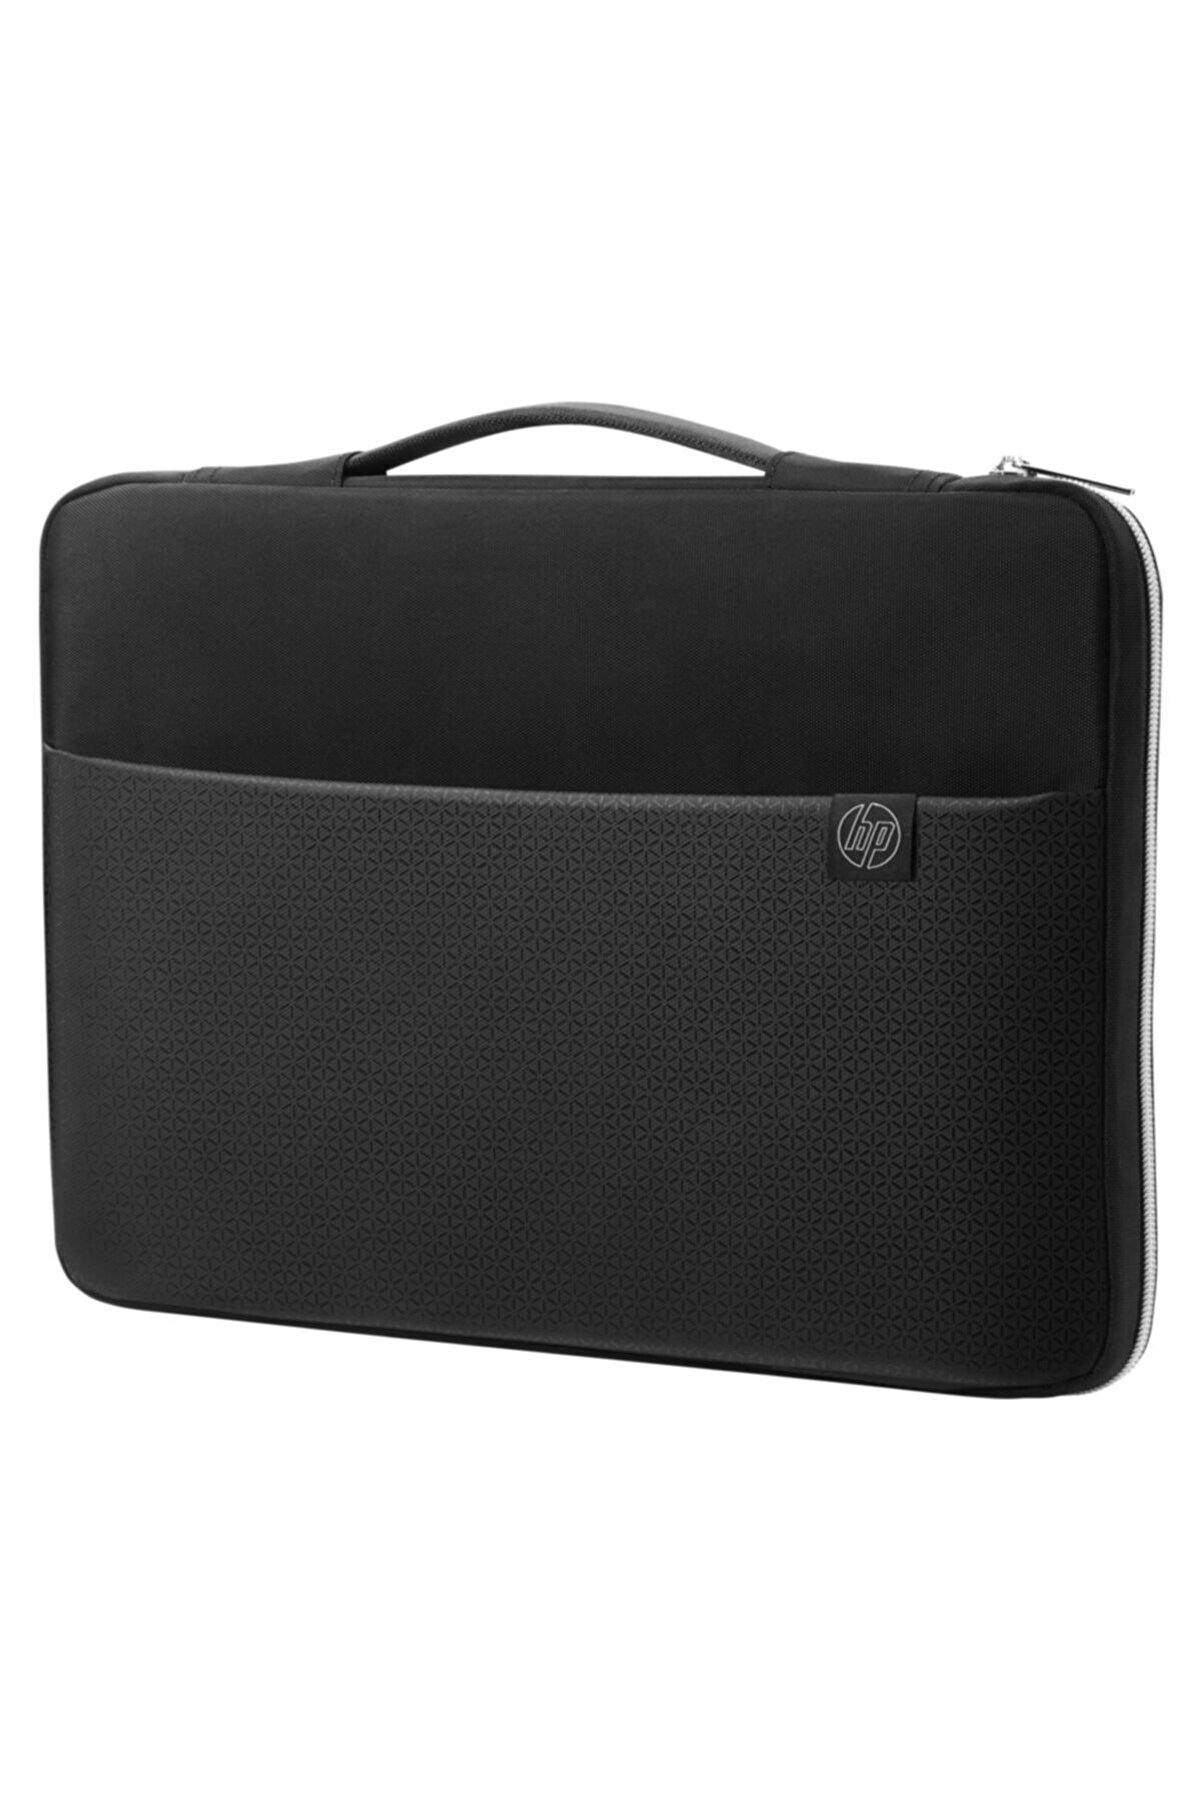 HP 14 Inç Notebook çantası - Gümüş & Siyah - 3xd34aa